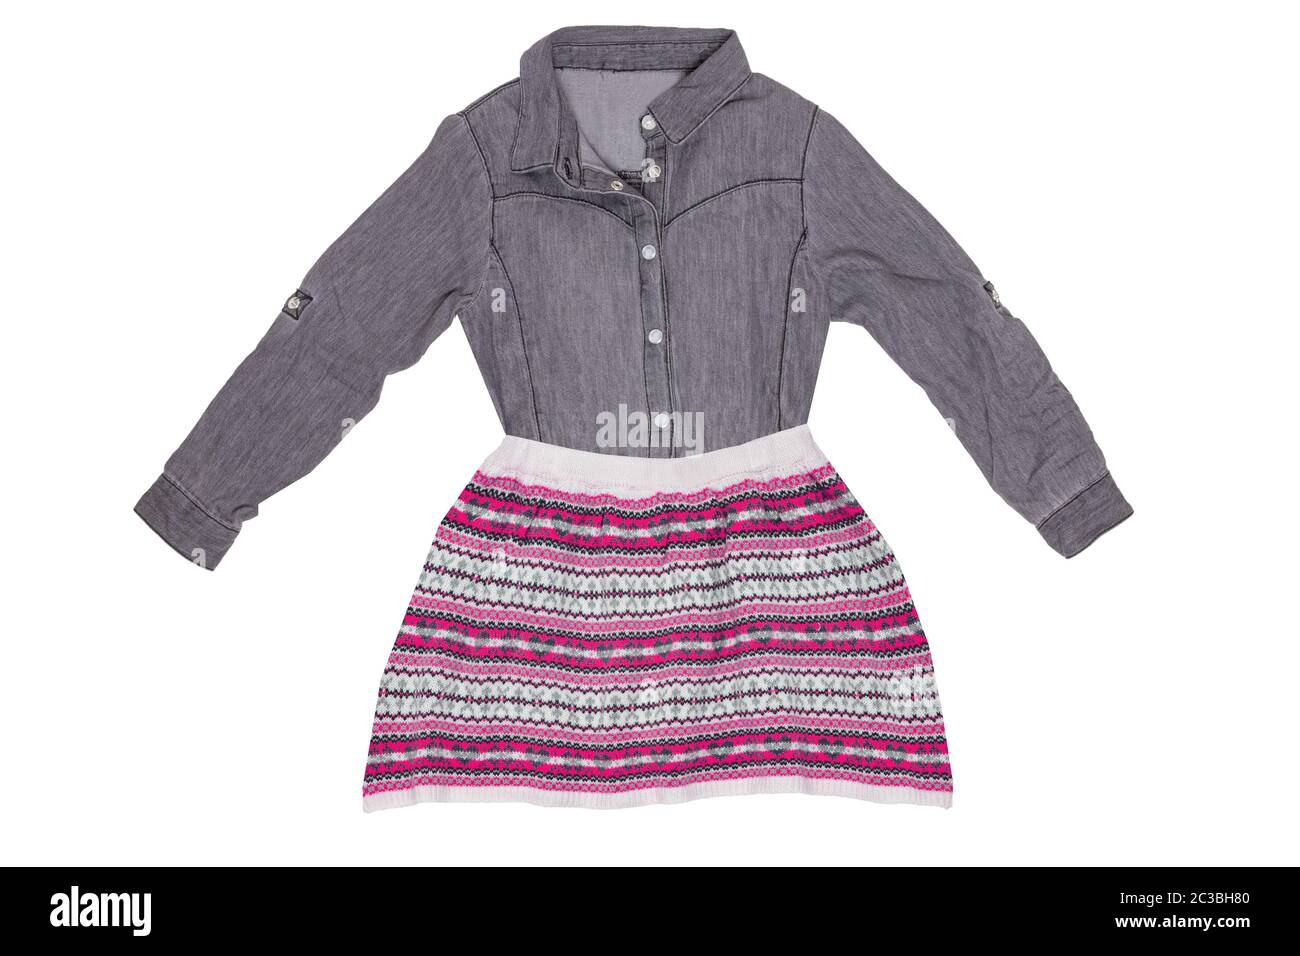 Kleidung für Kinder. Collage einer schönen grauen, sportlichen Bluse für Mädchen mit einem farbenfrohen, kurzen pinkfarbenen Rock, der auf weißem Hintergrund isoliert ist. Kinder spr Stockfoto